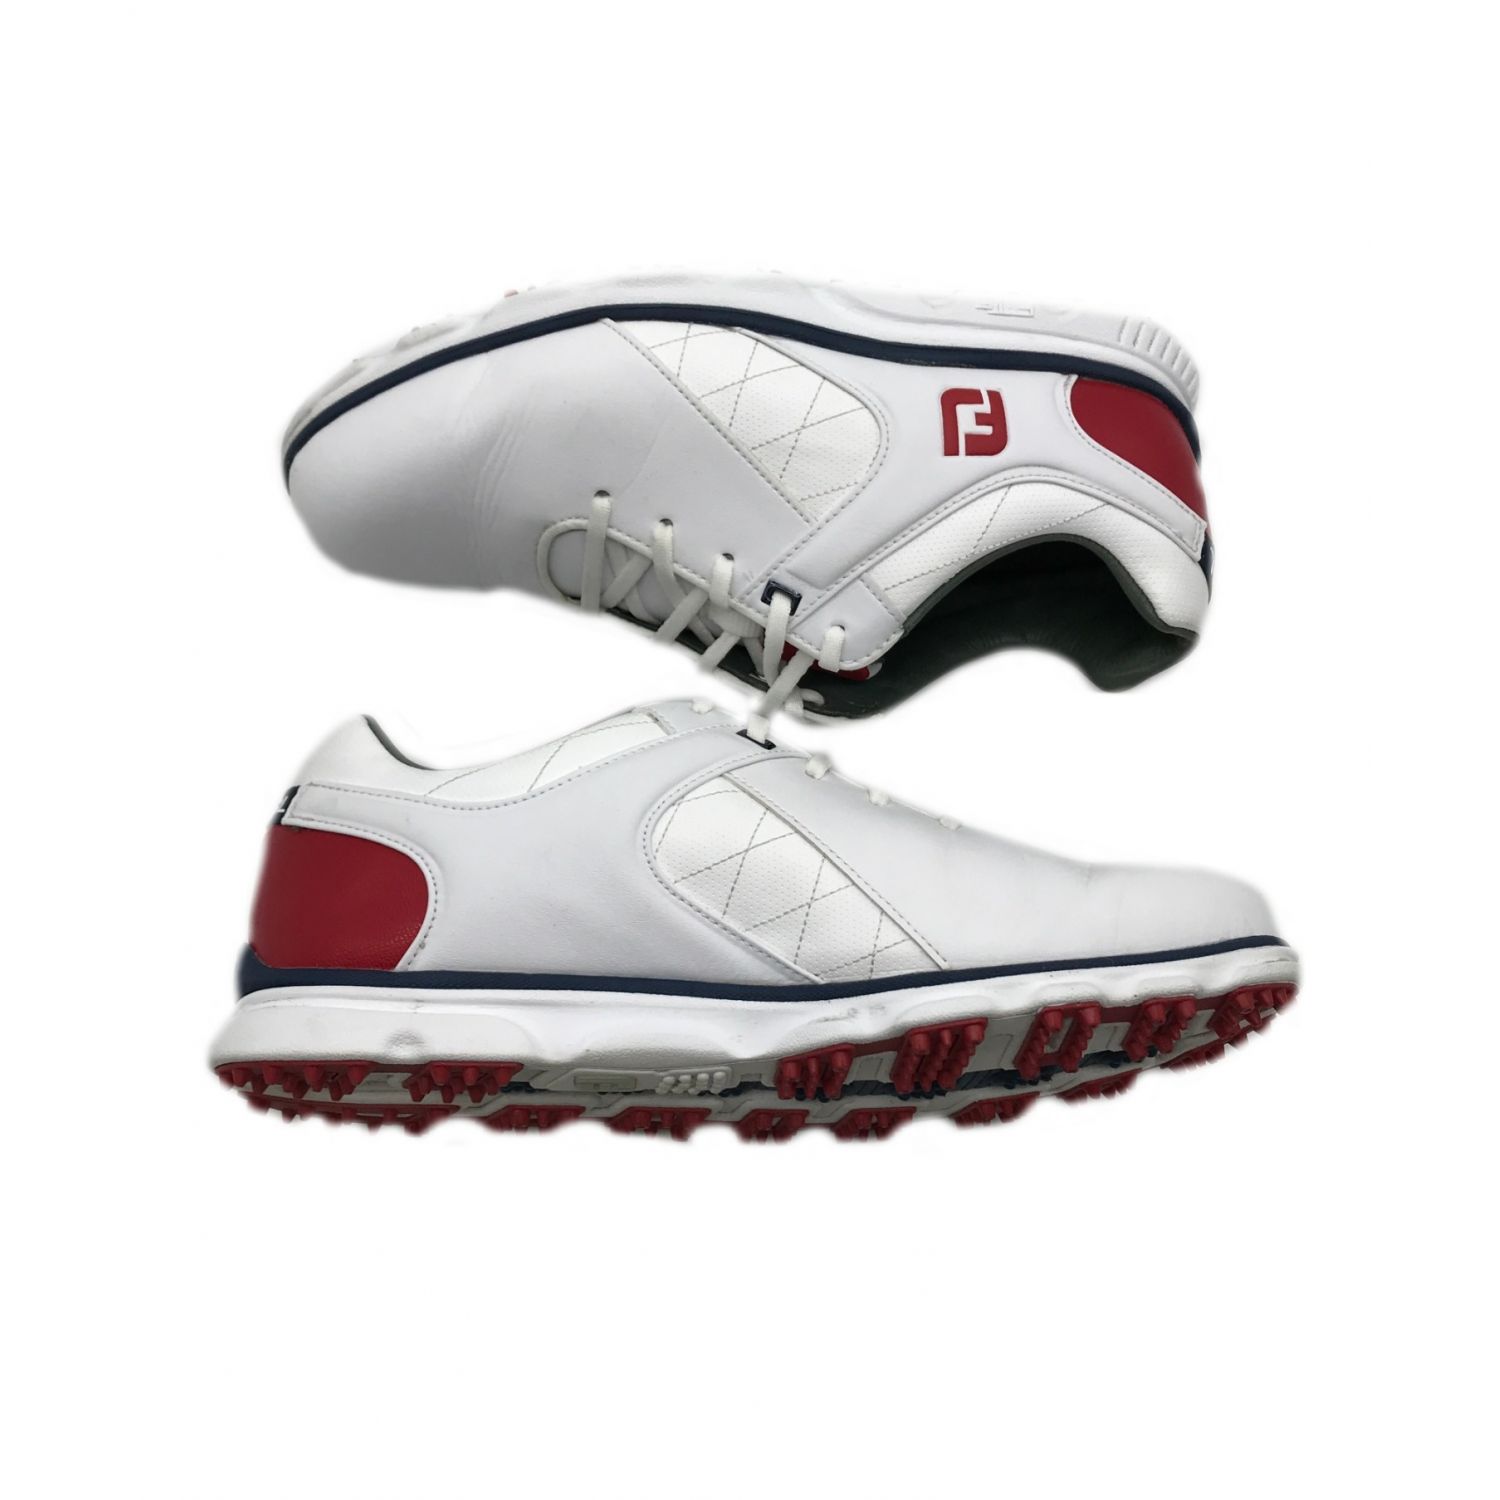 Foot-Joy (フットジョイ) ゴルフシューズ メンズ SIZE 27cm ホワイト